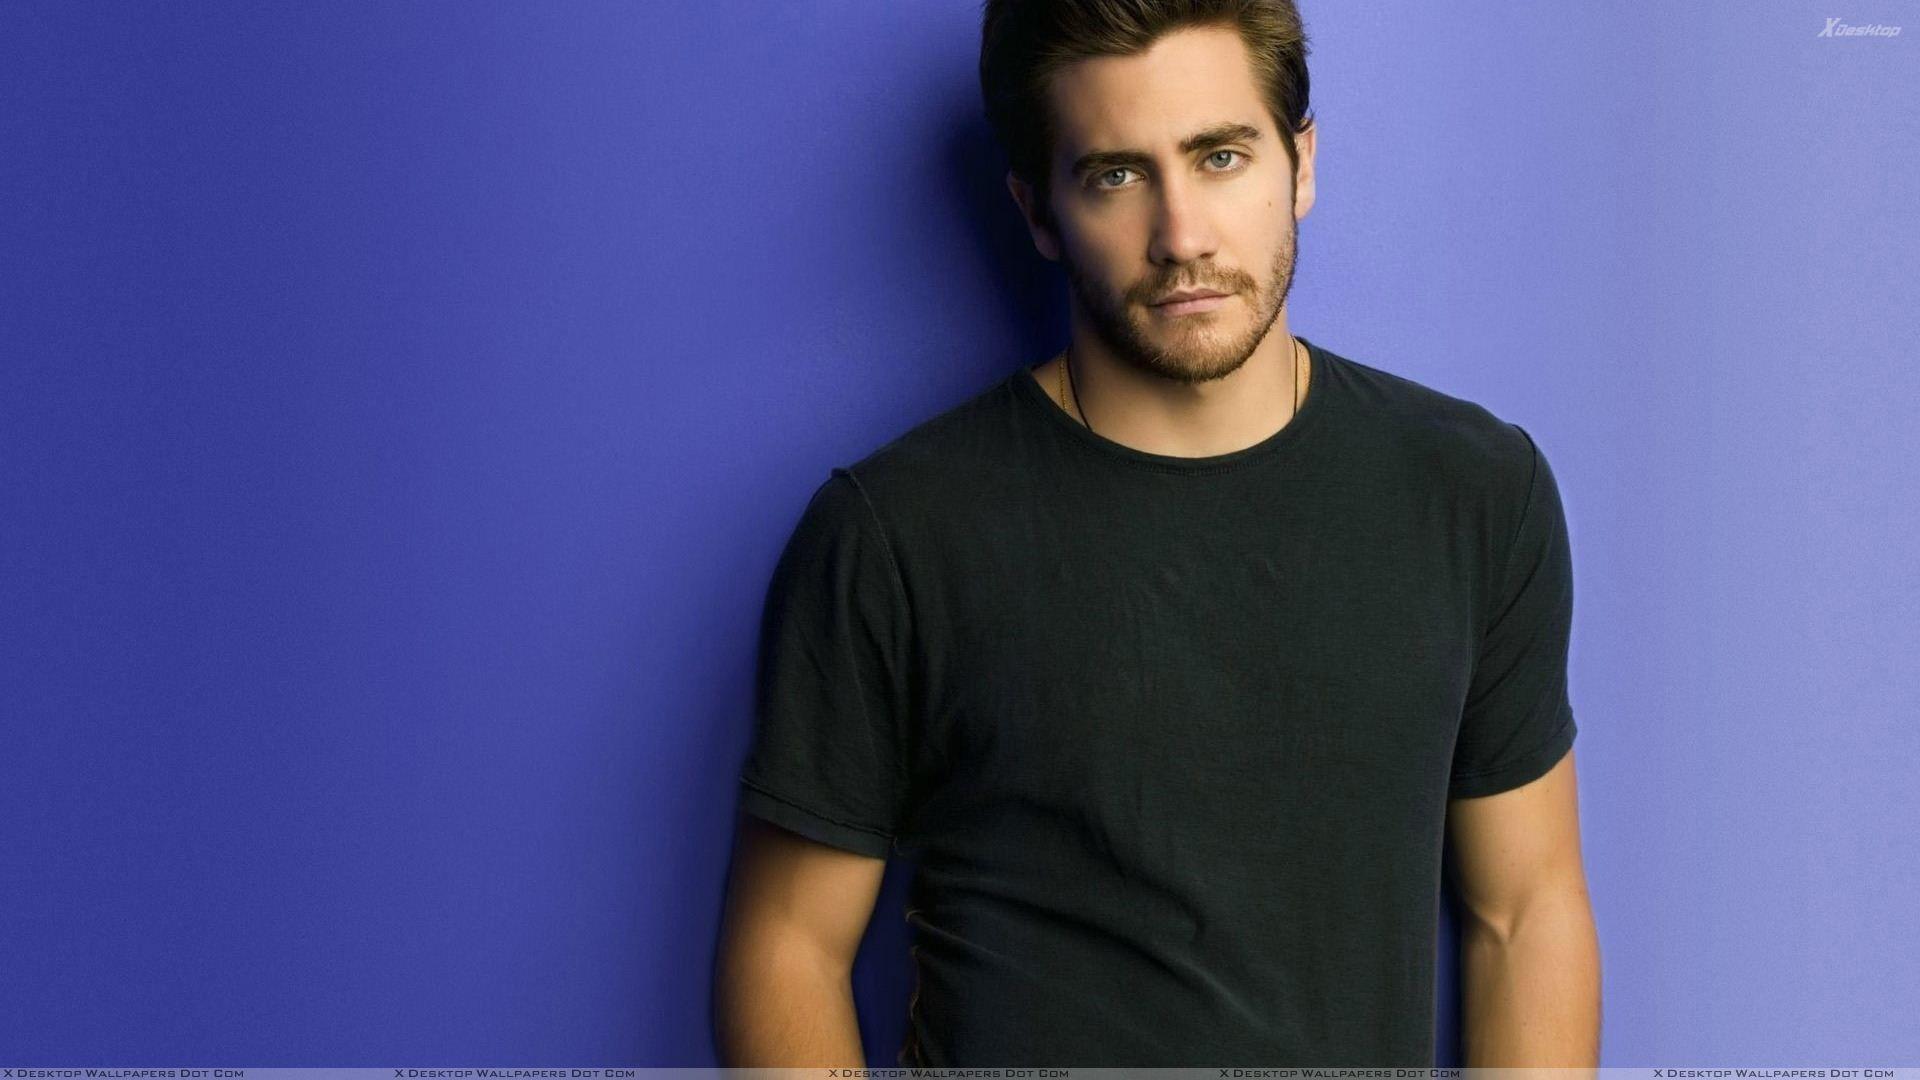 Jake Gyllenhaal In Wet Black T Shirt Photohoot Wallpaper